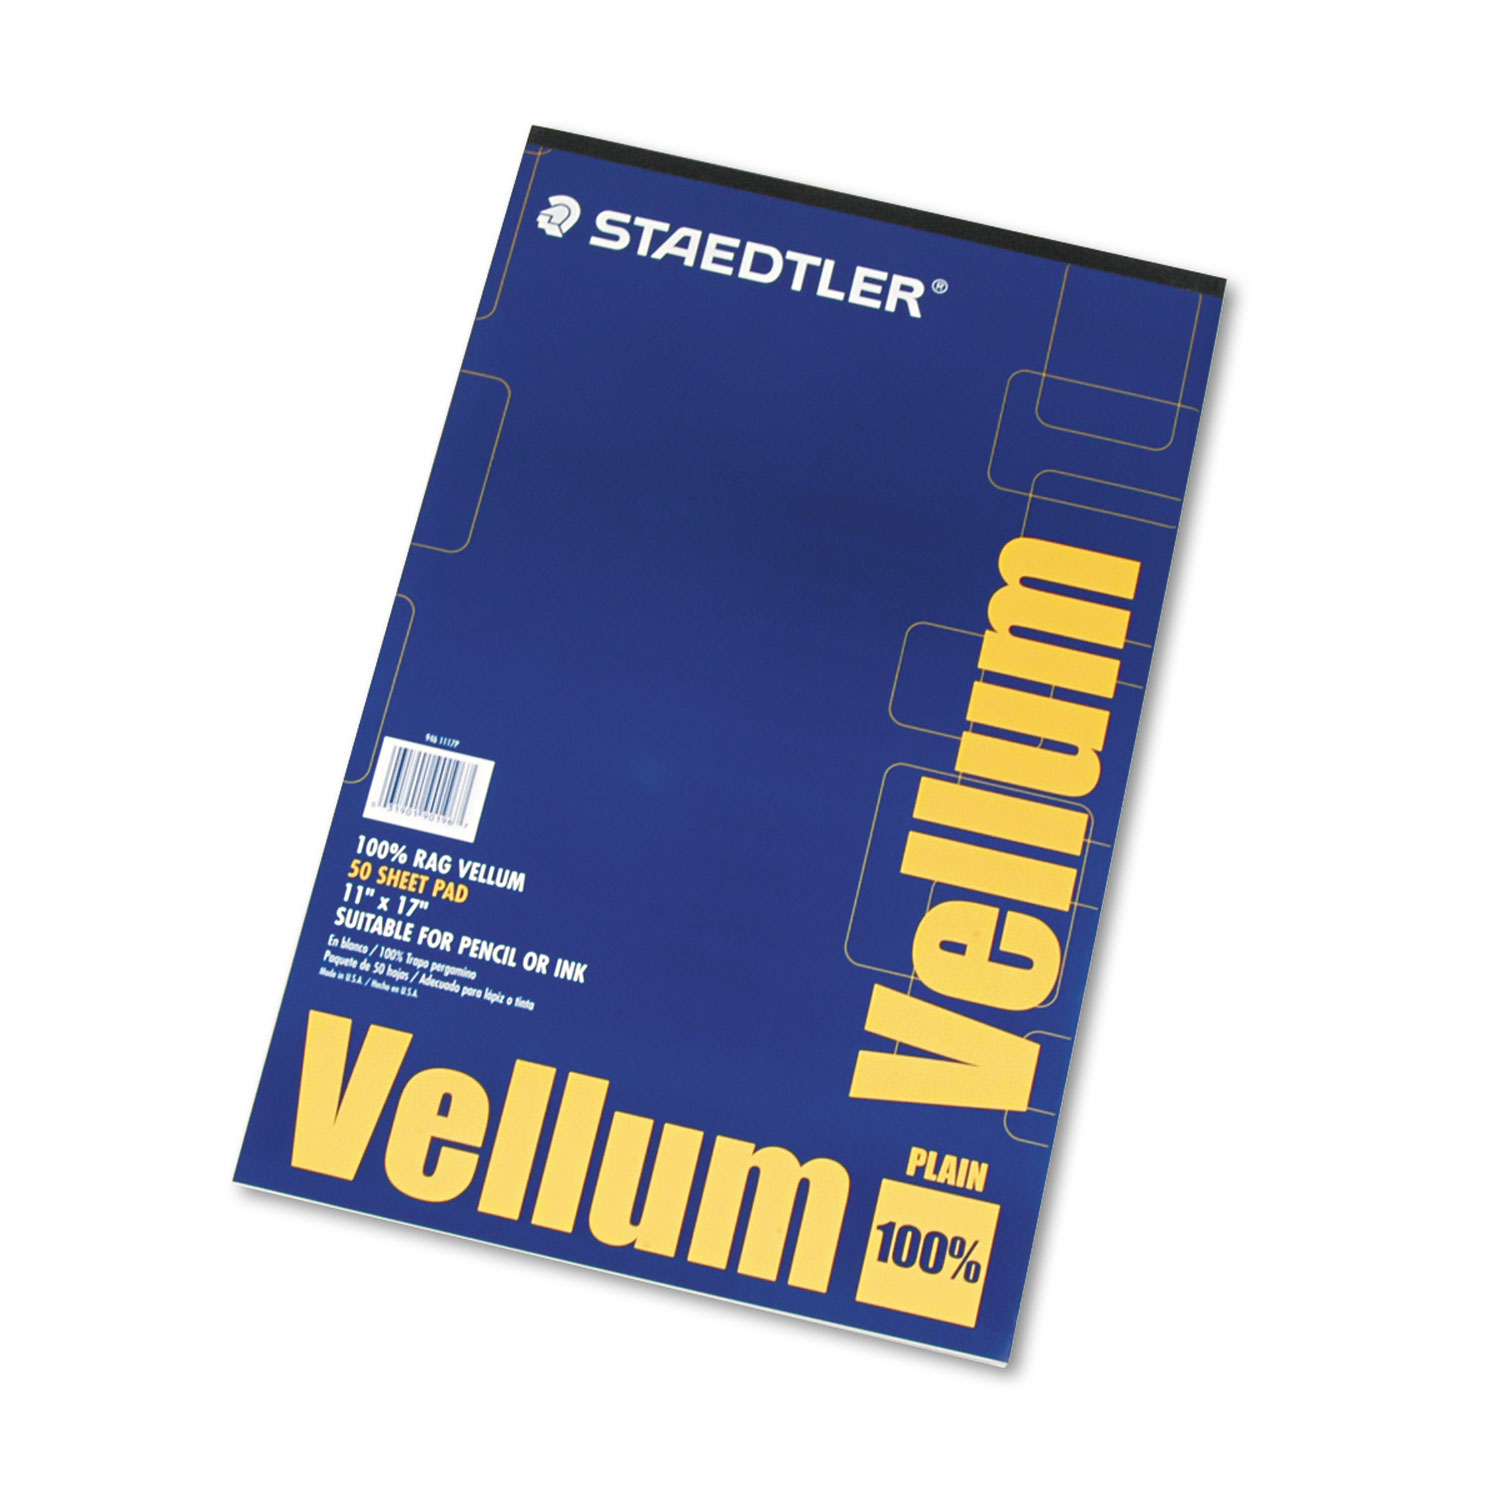 Staedtler® Mars Translucent Vellum Art & Drafting Paper, 16lb, 11 x 17, Translucent, 50/Pad